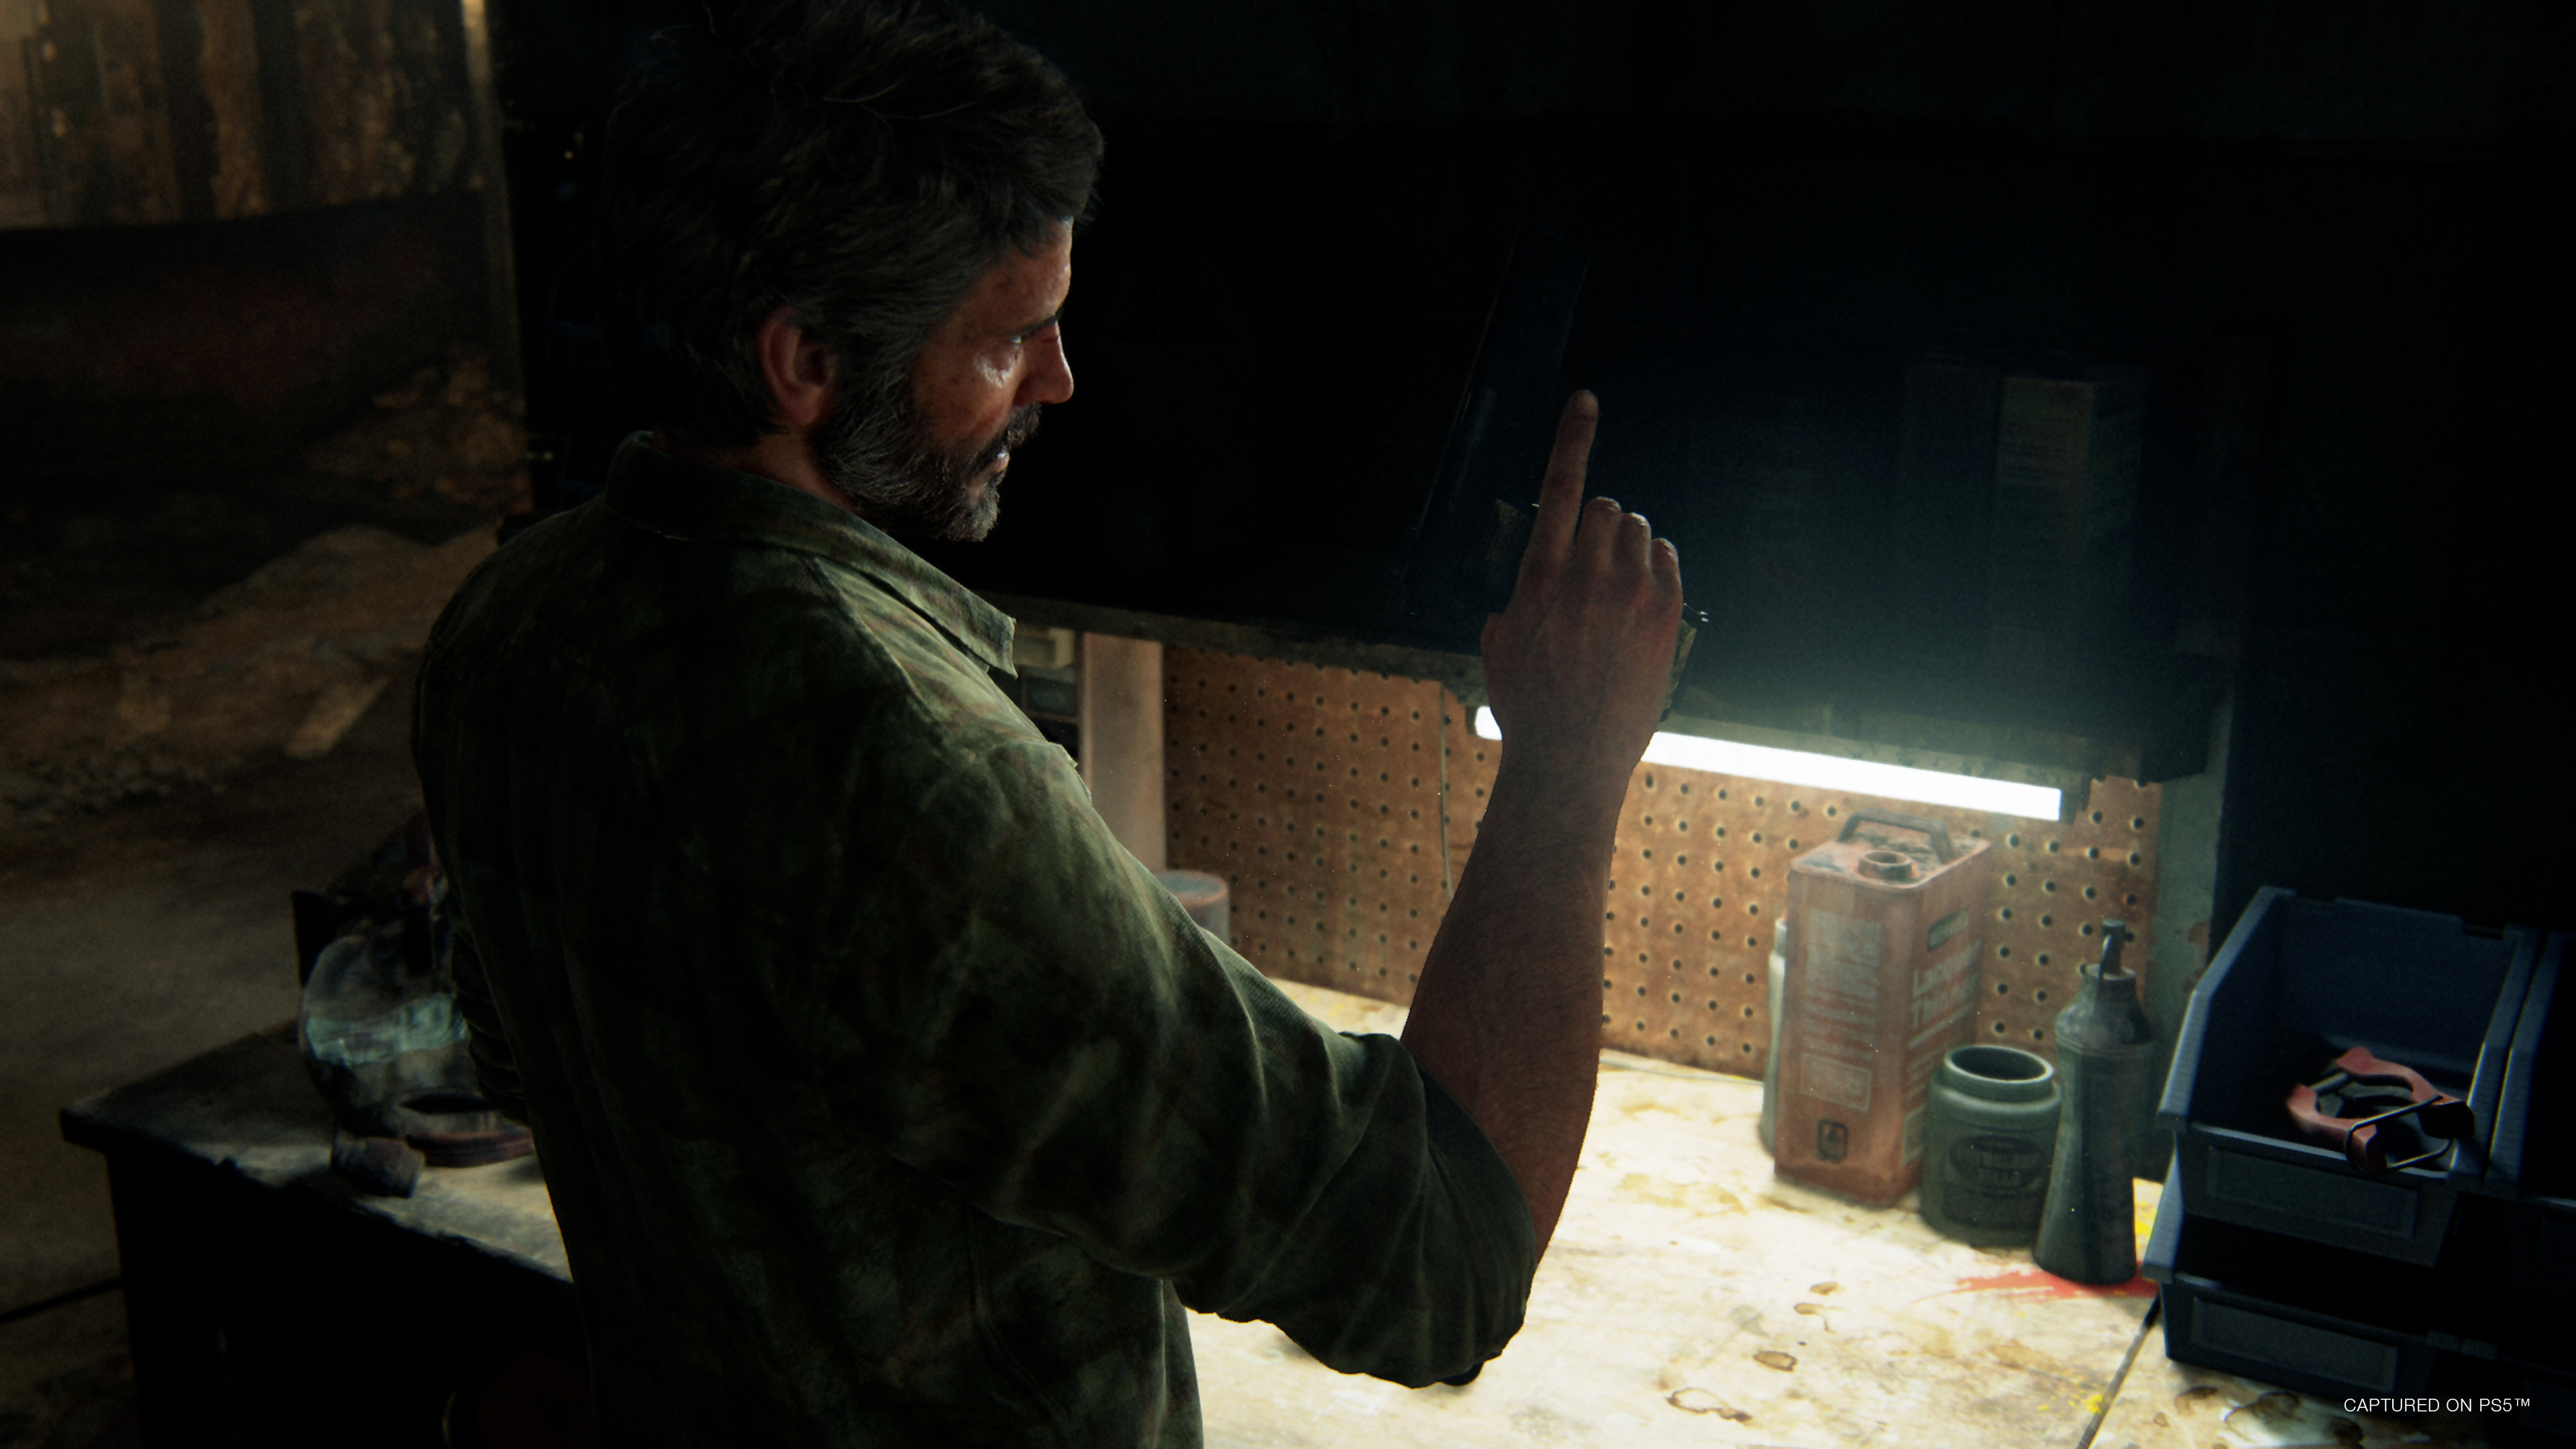 The Last of Us Part I : le portage PC est une catastrophe, voici les pires  bugs